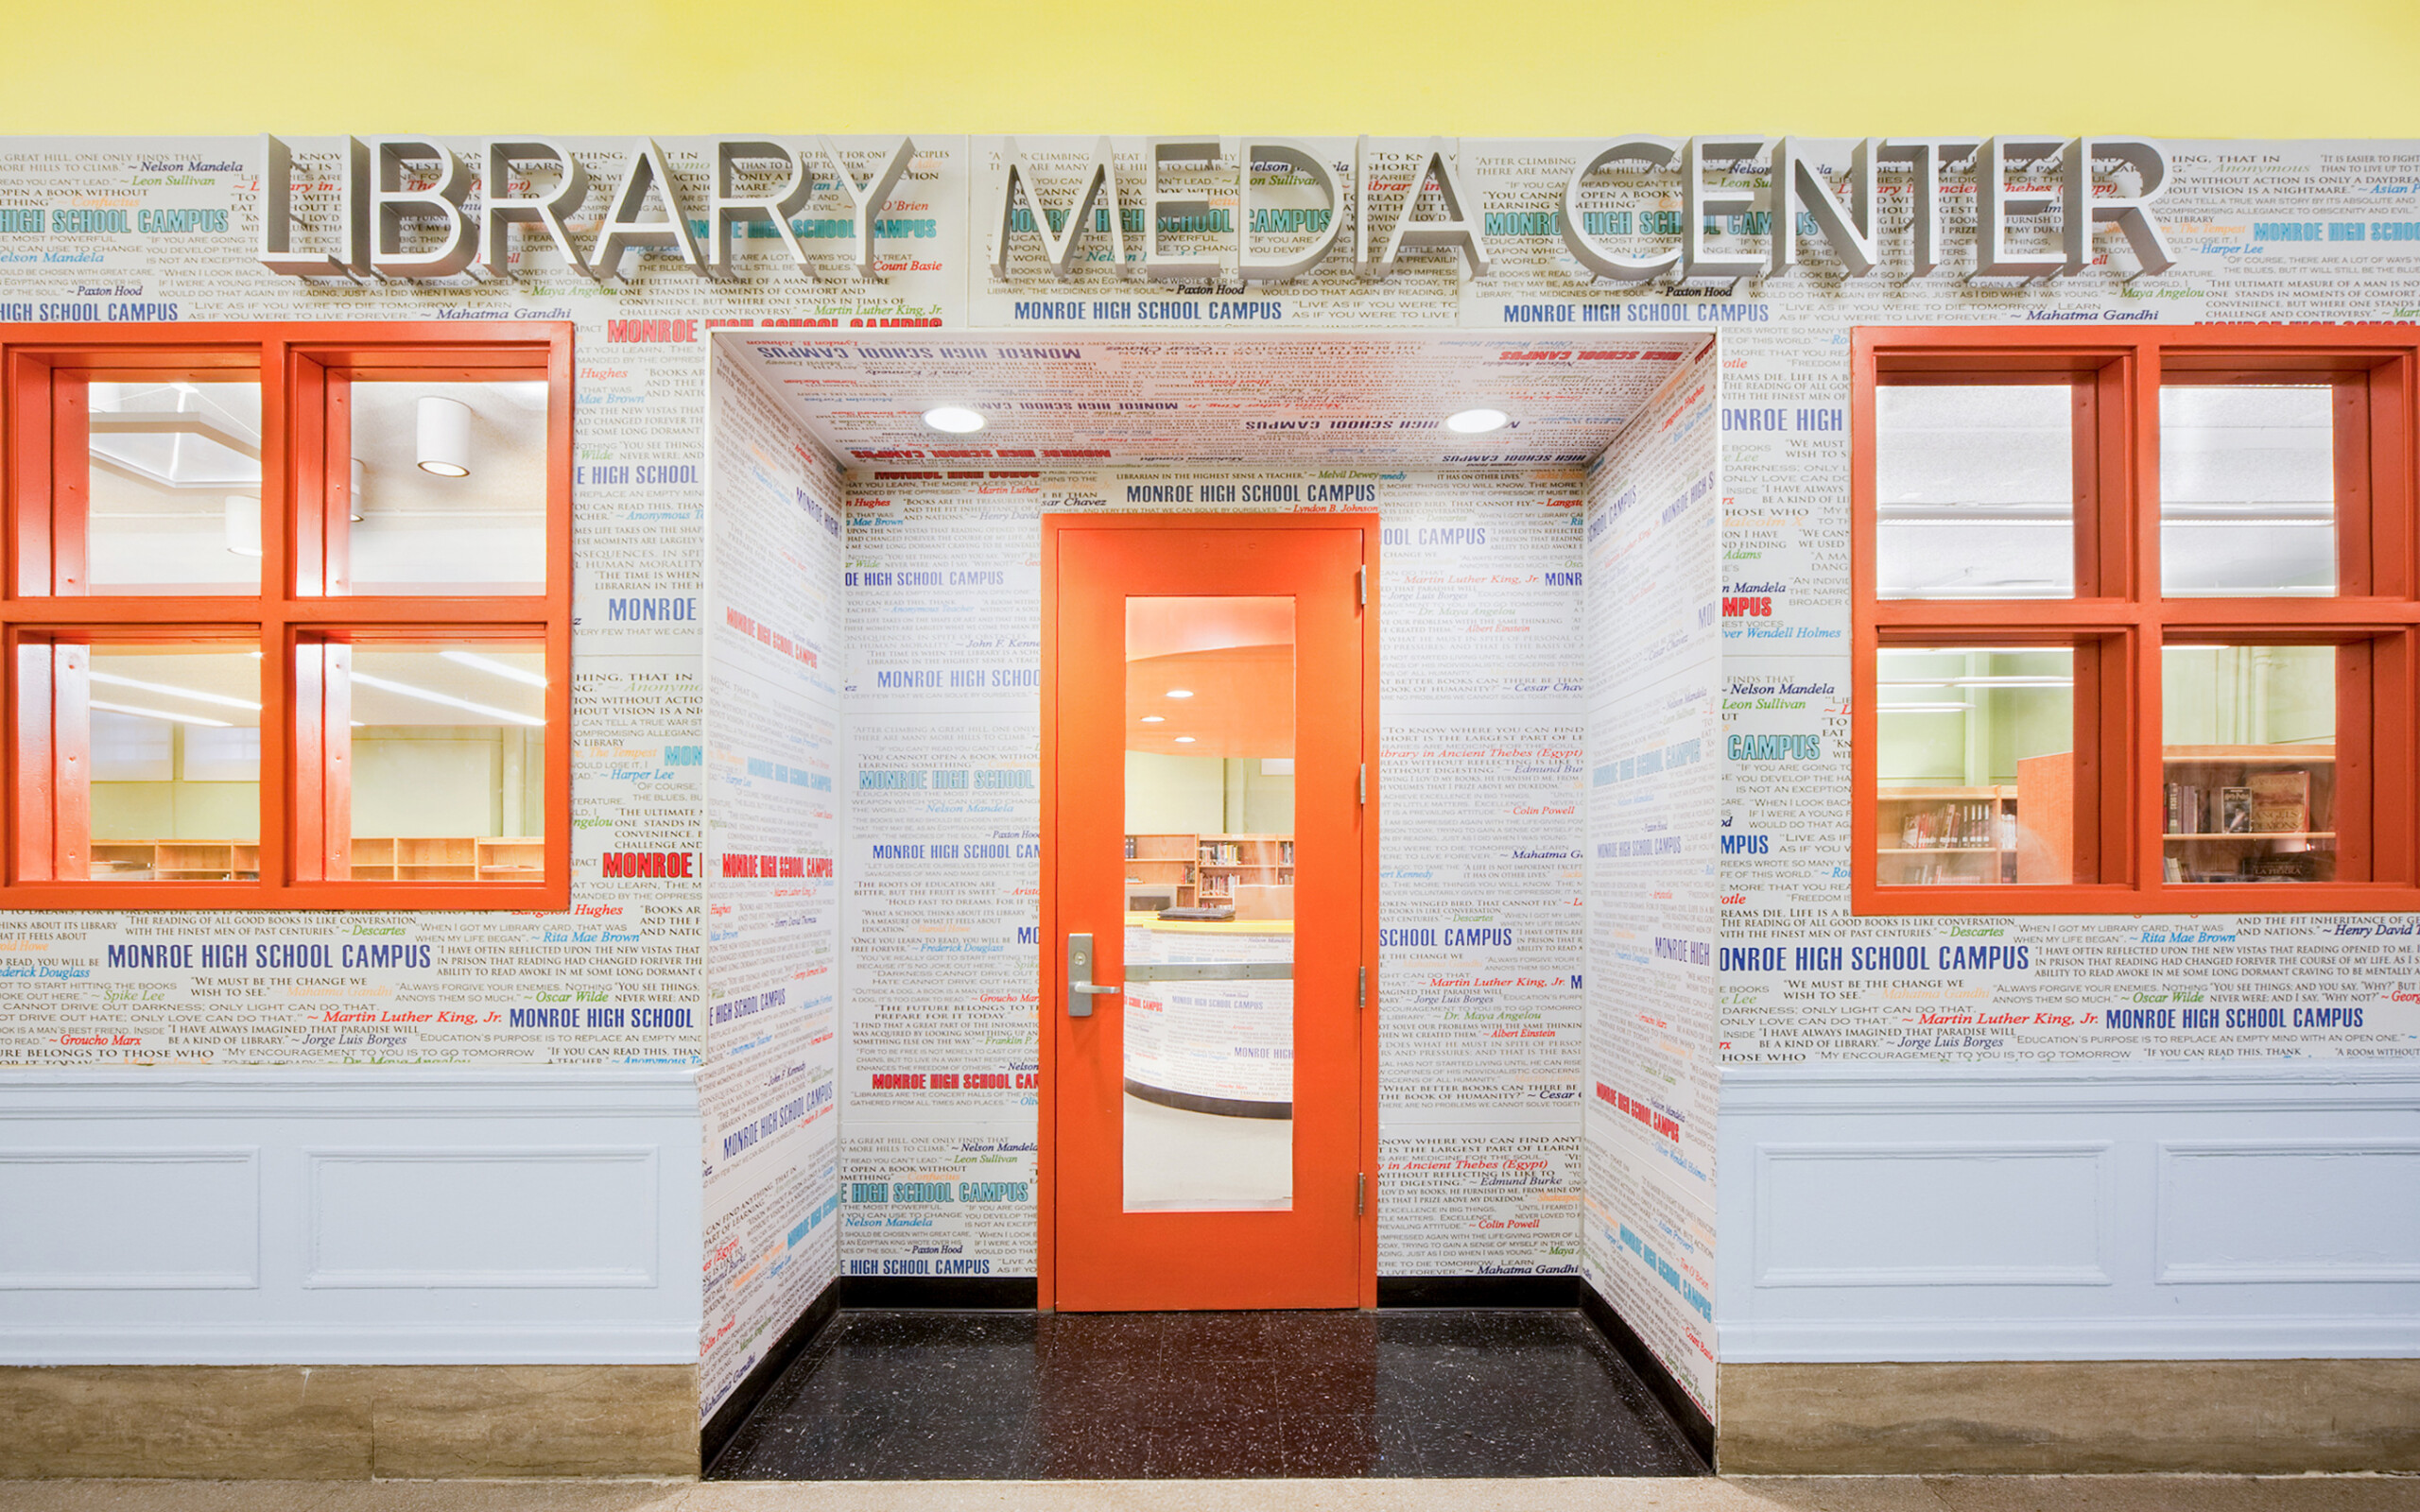 media center